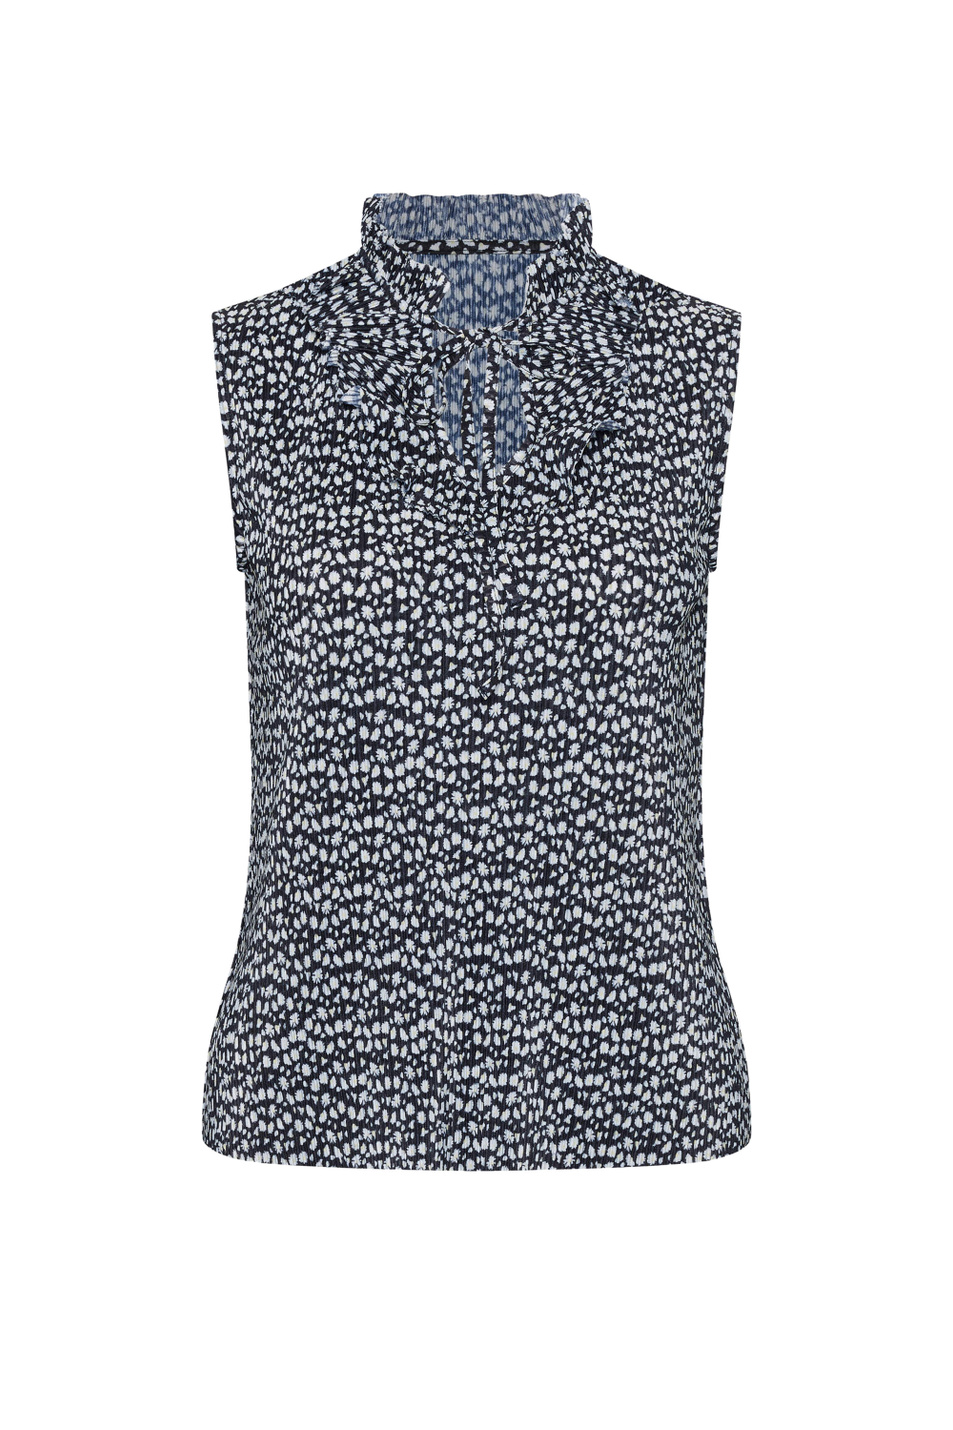 Orsay Плиссированная блузка с цветочным узором и оборками (цвет ), артикул 111006 | Фото 1